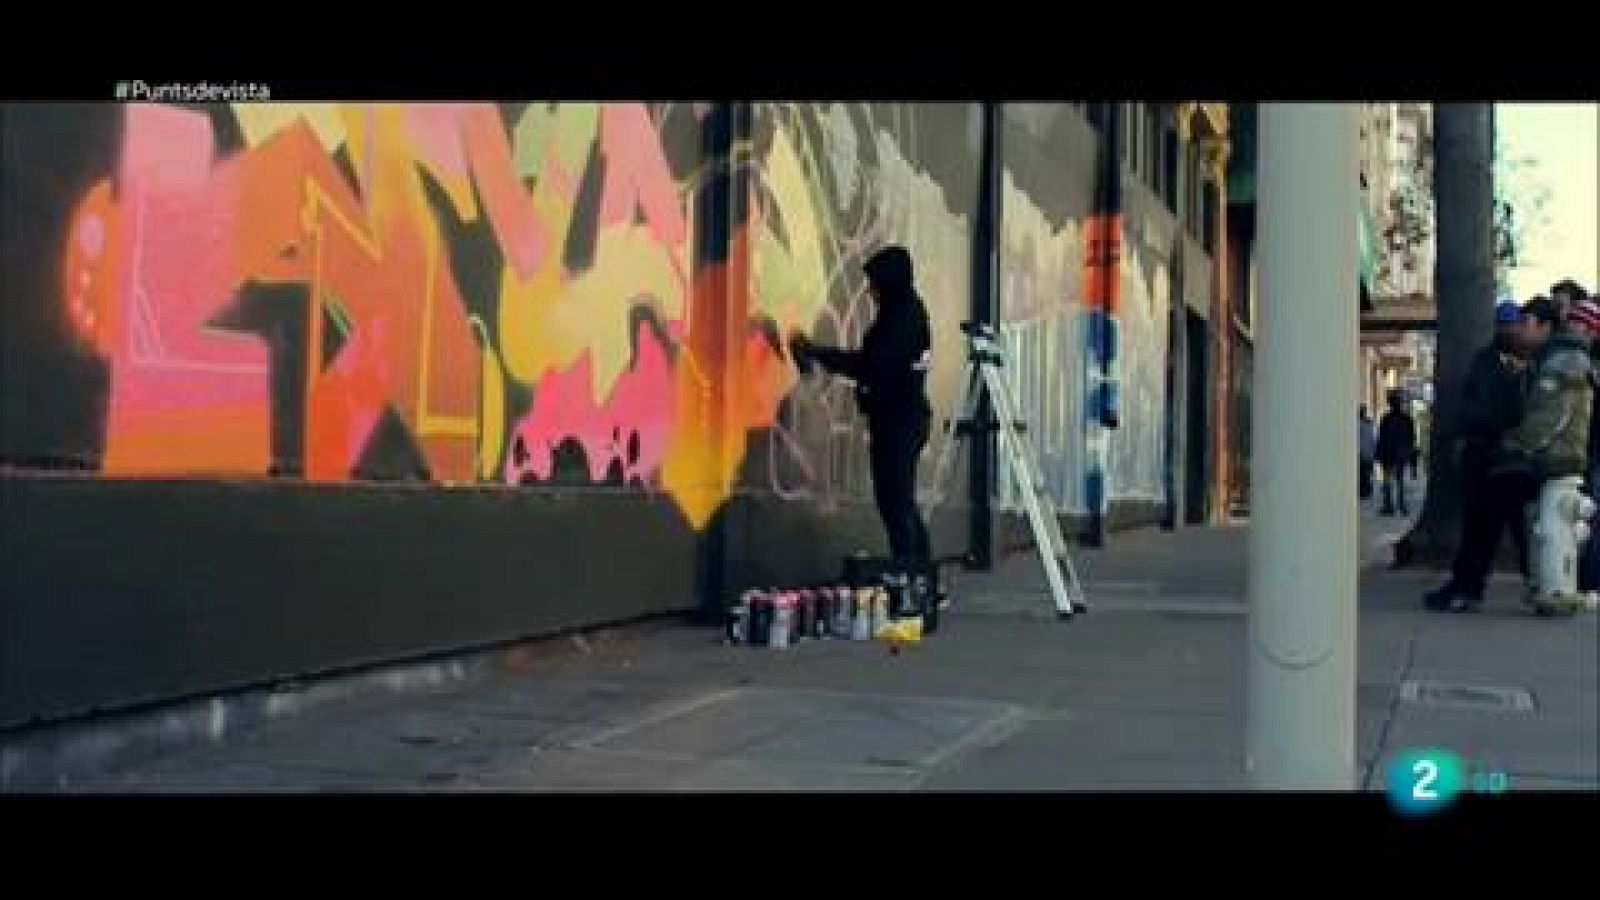 Punts de vista - Musa 71, escriptora de graffitis